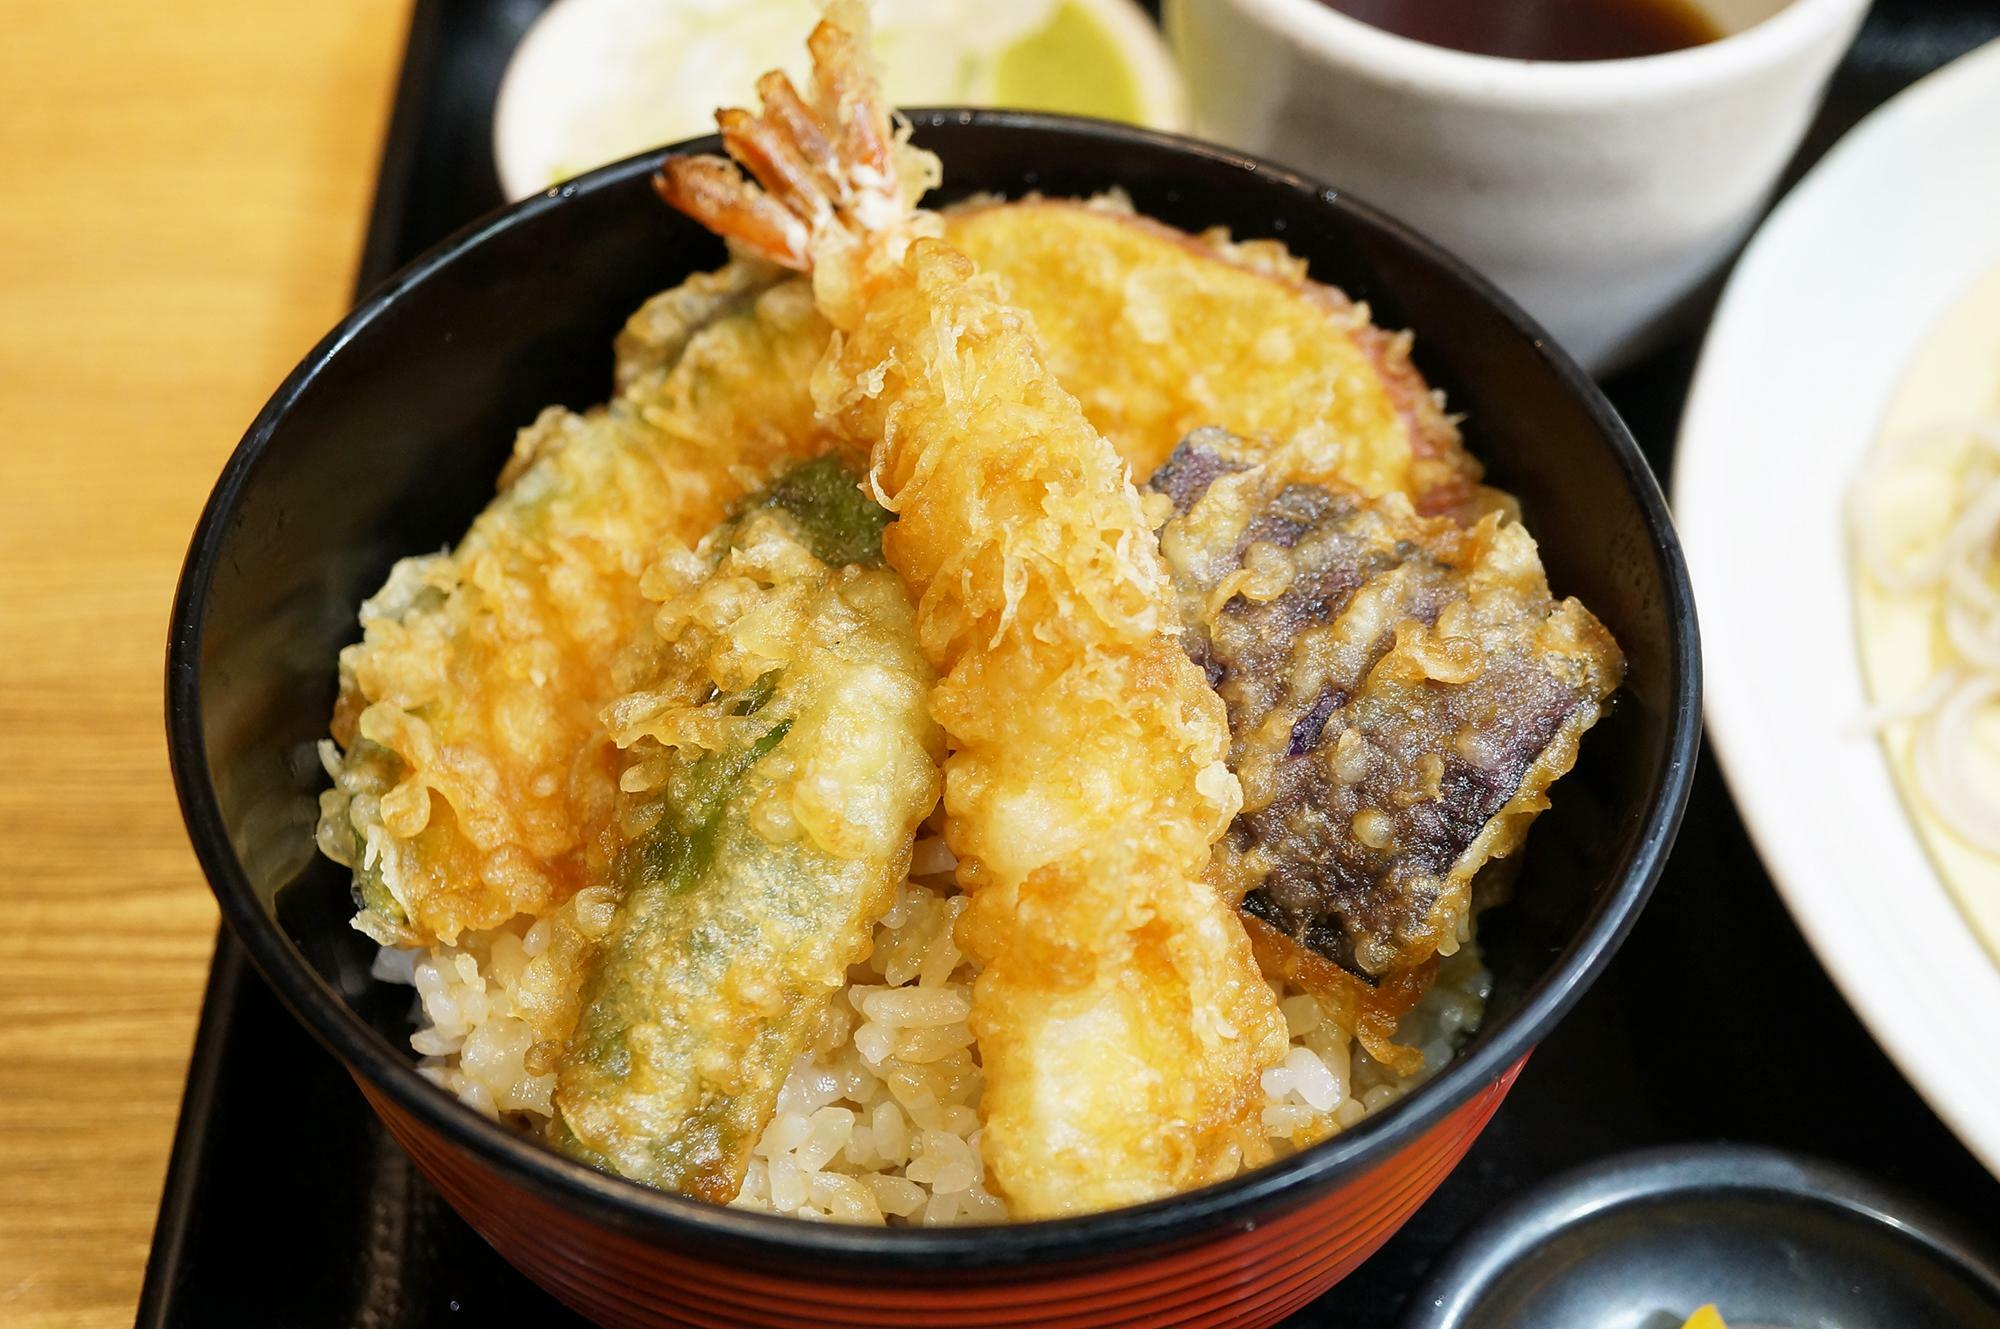 ミニ天丼。海老やなす、かぼちゃなど数種類の天ぷらが乗った豪華な天丼です。